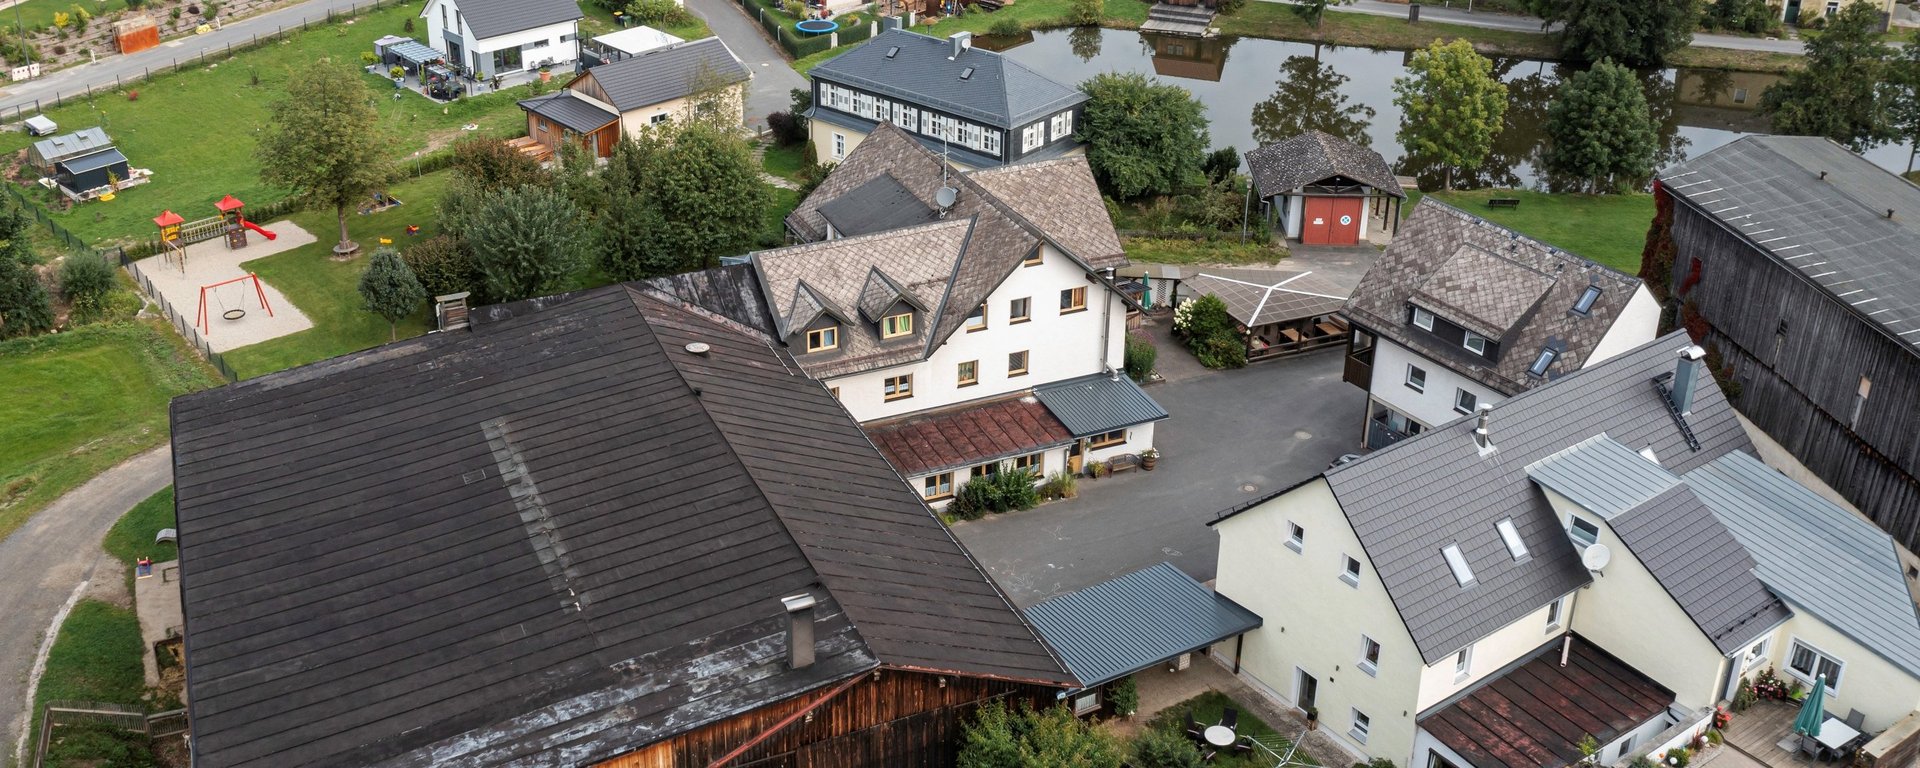 Luftaufnahme von einem dörflichen Ferienhof in Bayern